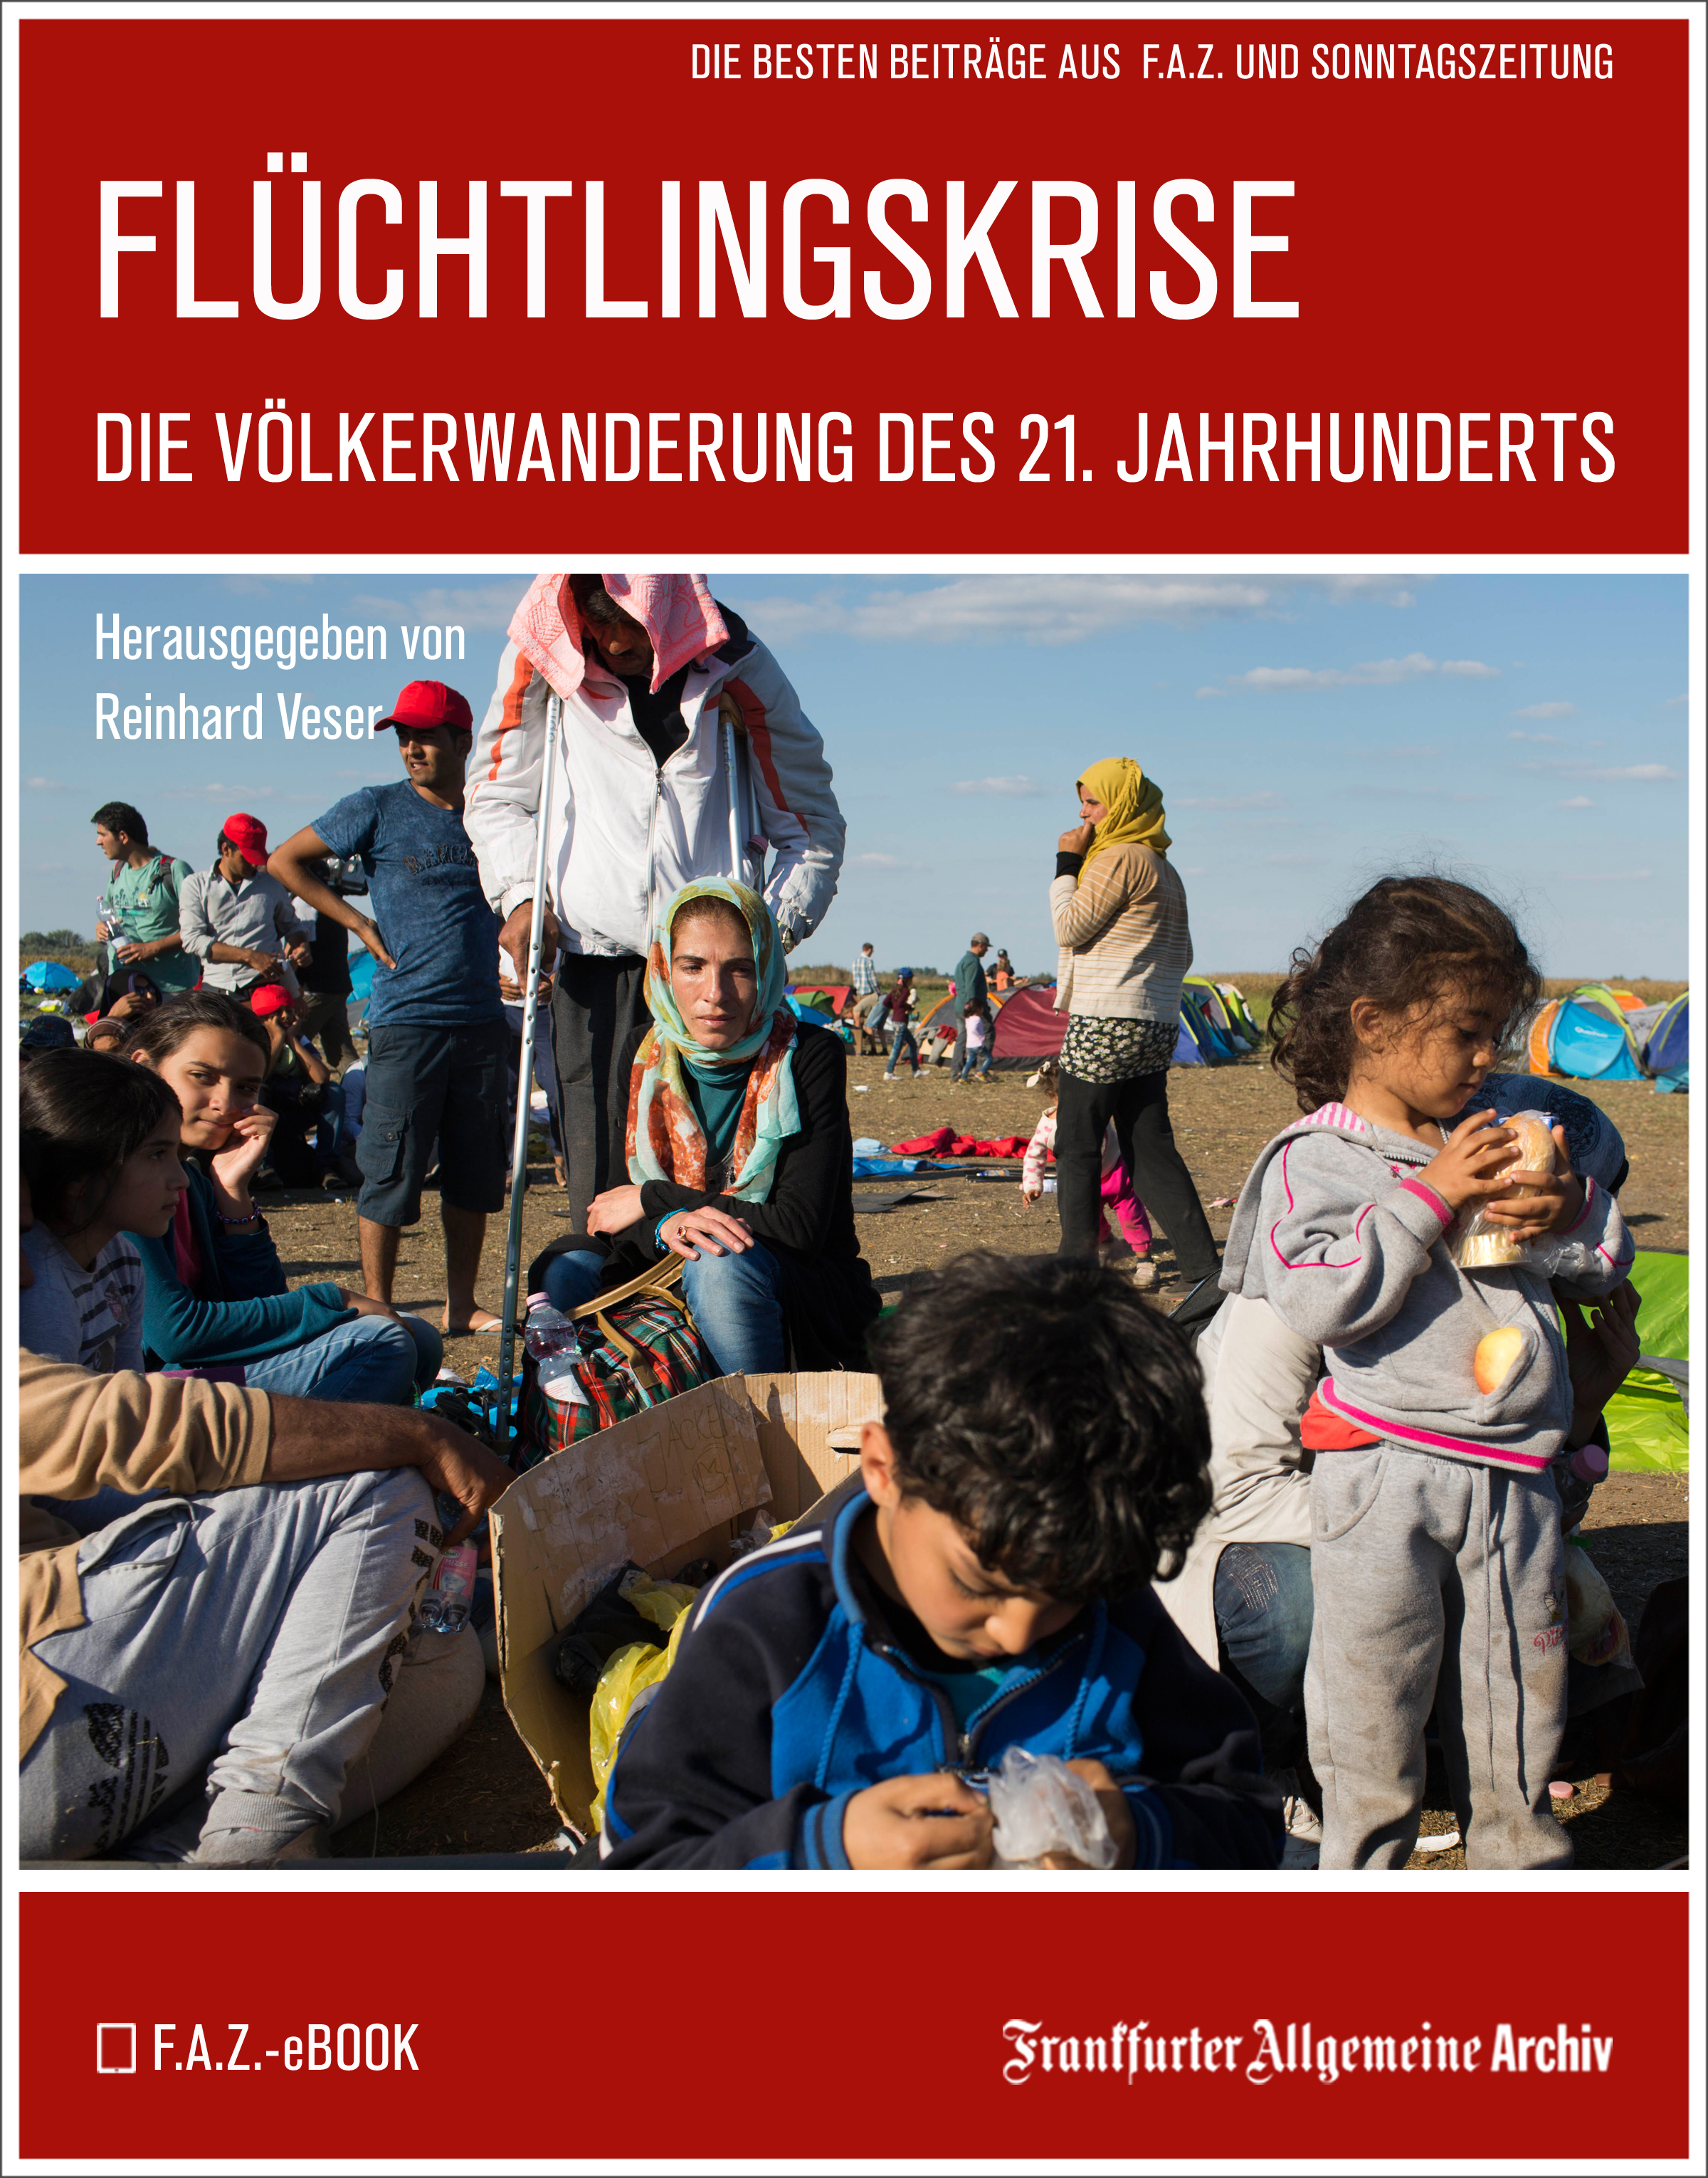 Frankfurter Allgemeine Archiv Flüchtlingskrise